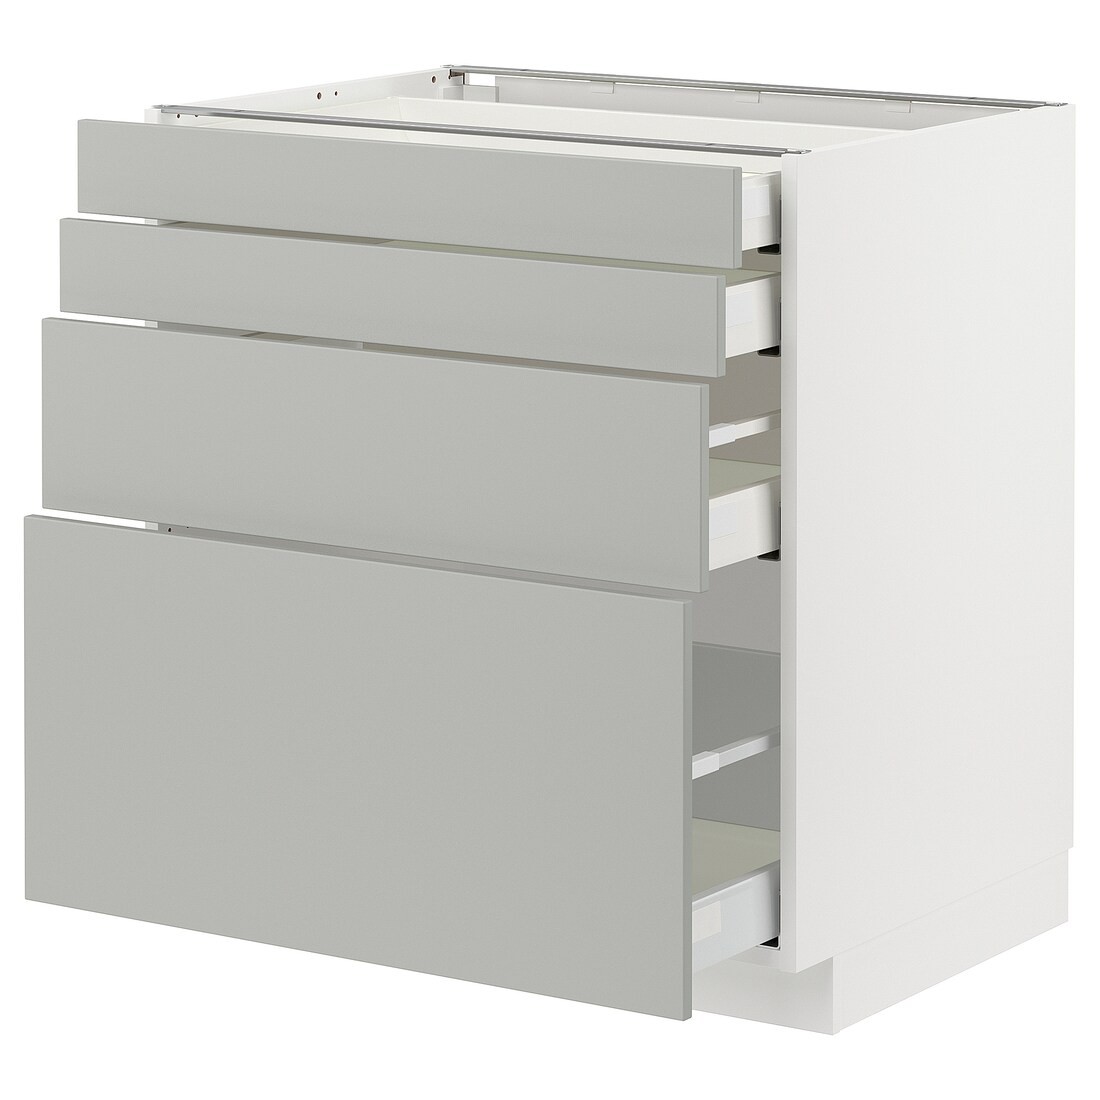 METOD / MAXIMERA Напольный шкаф 4 ящика, белый / Хавсторп светло-серый, 80x60 см